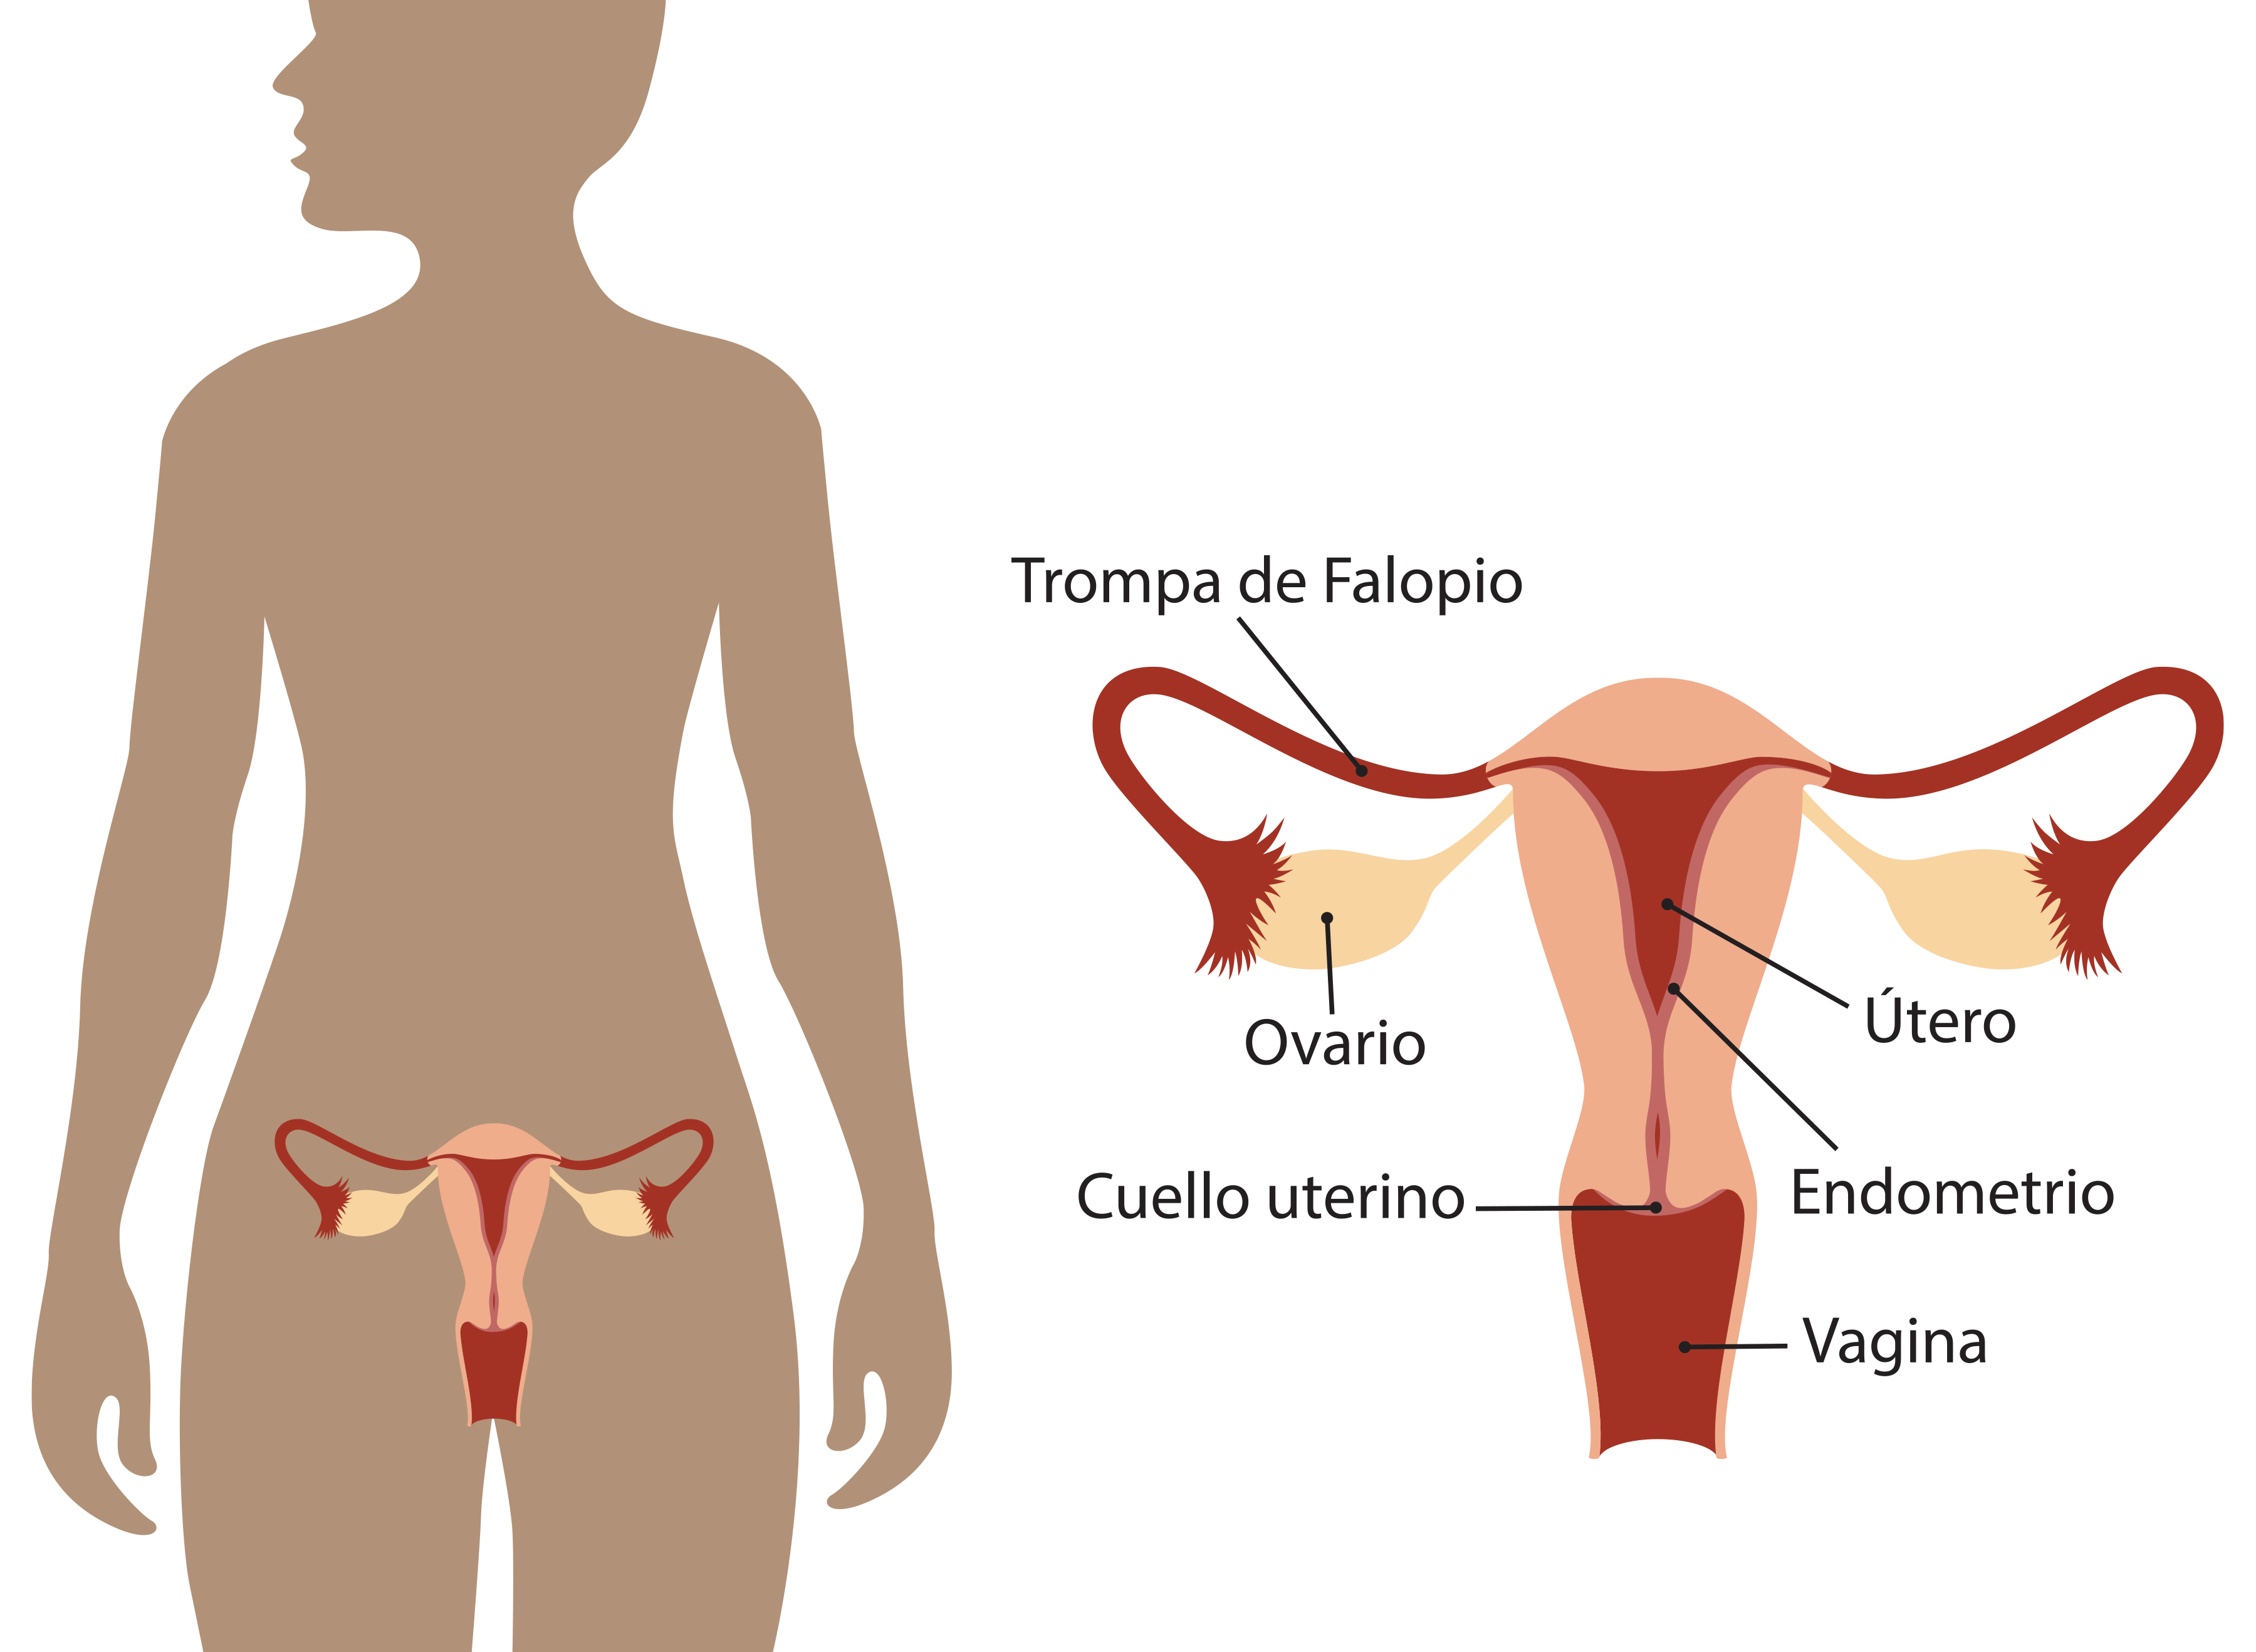 ooforectomia-extirpacion-ovario